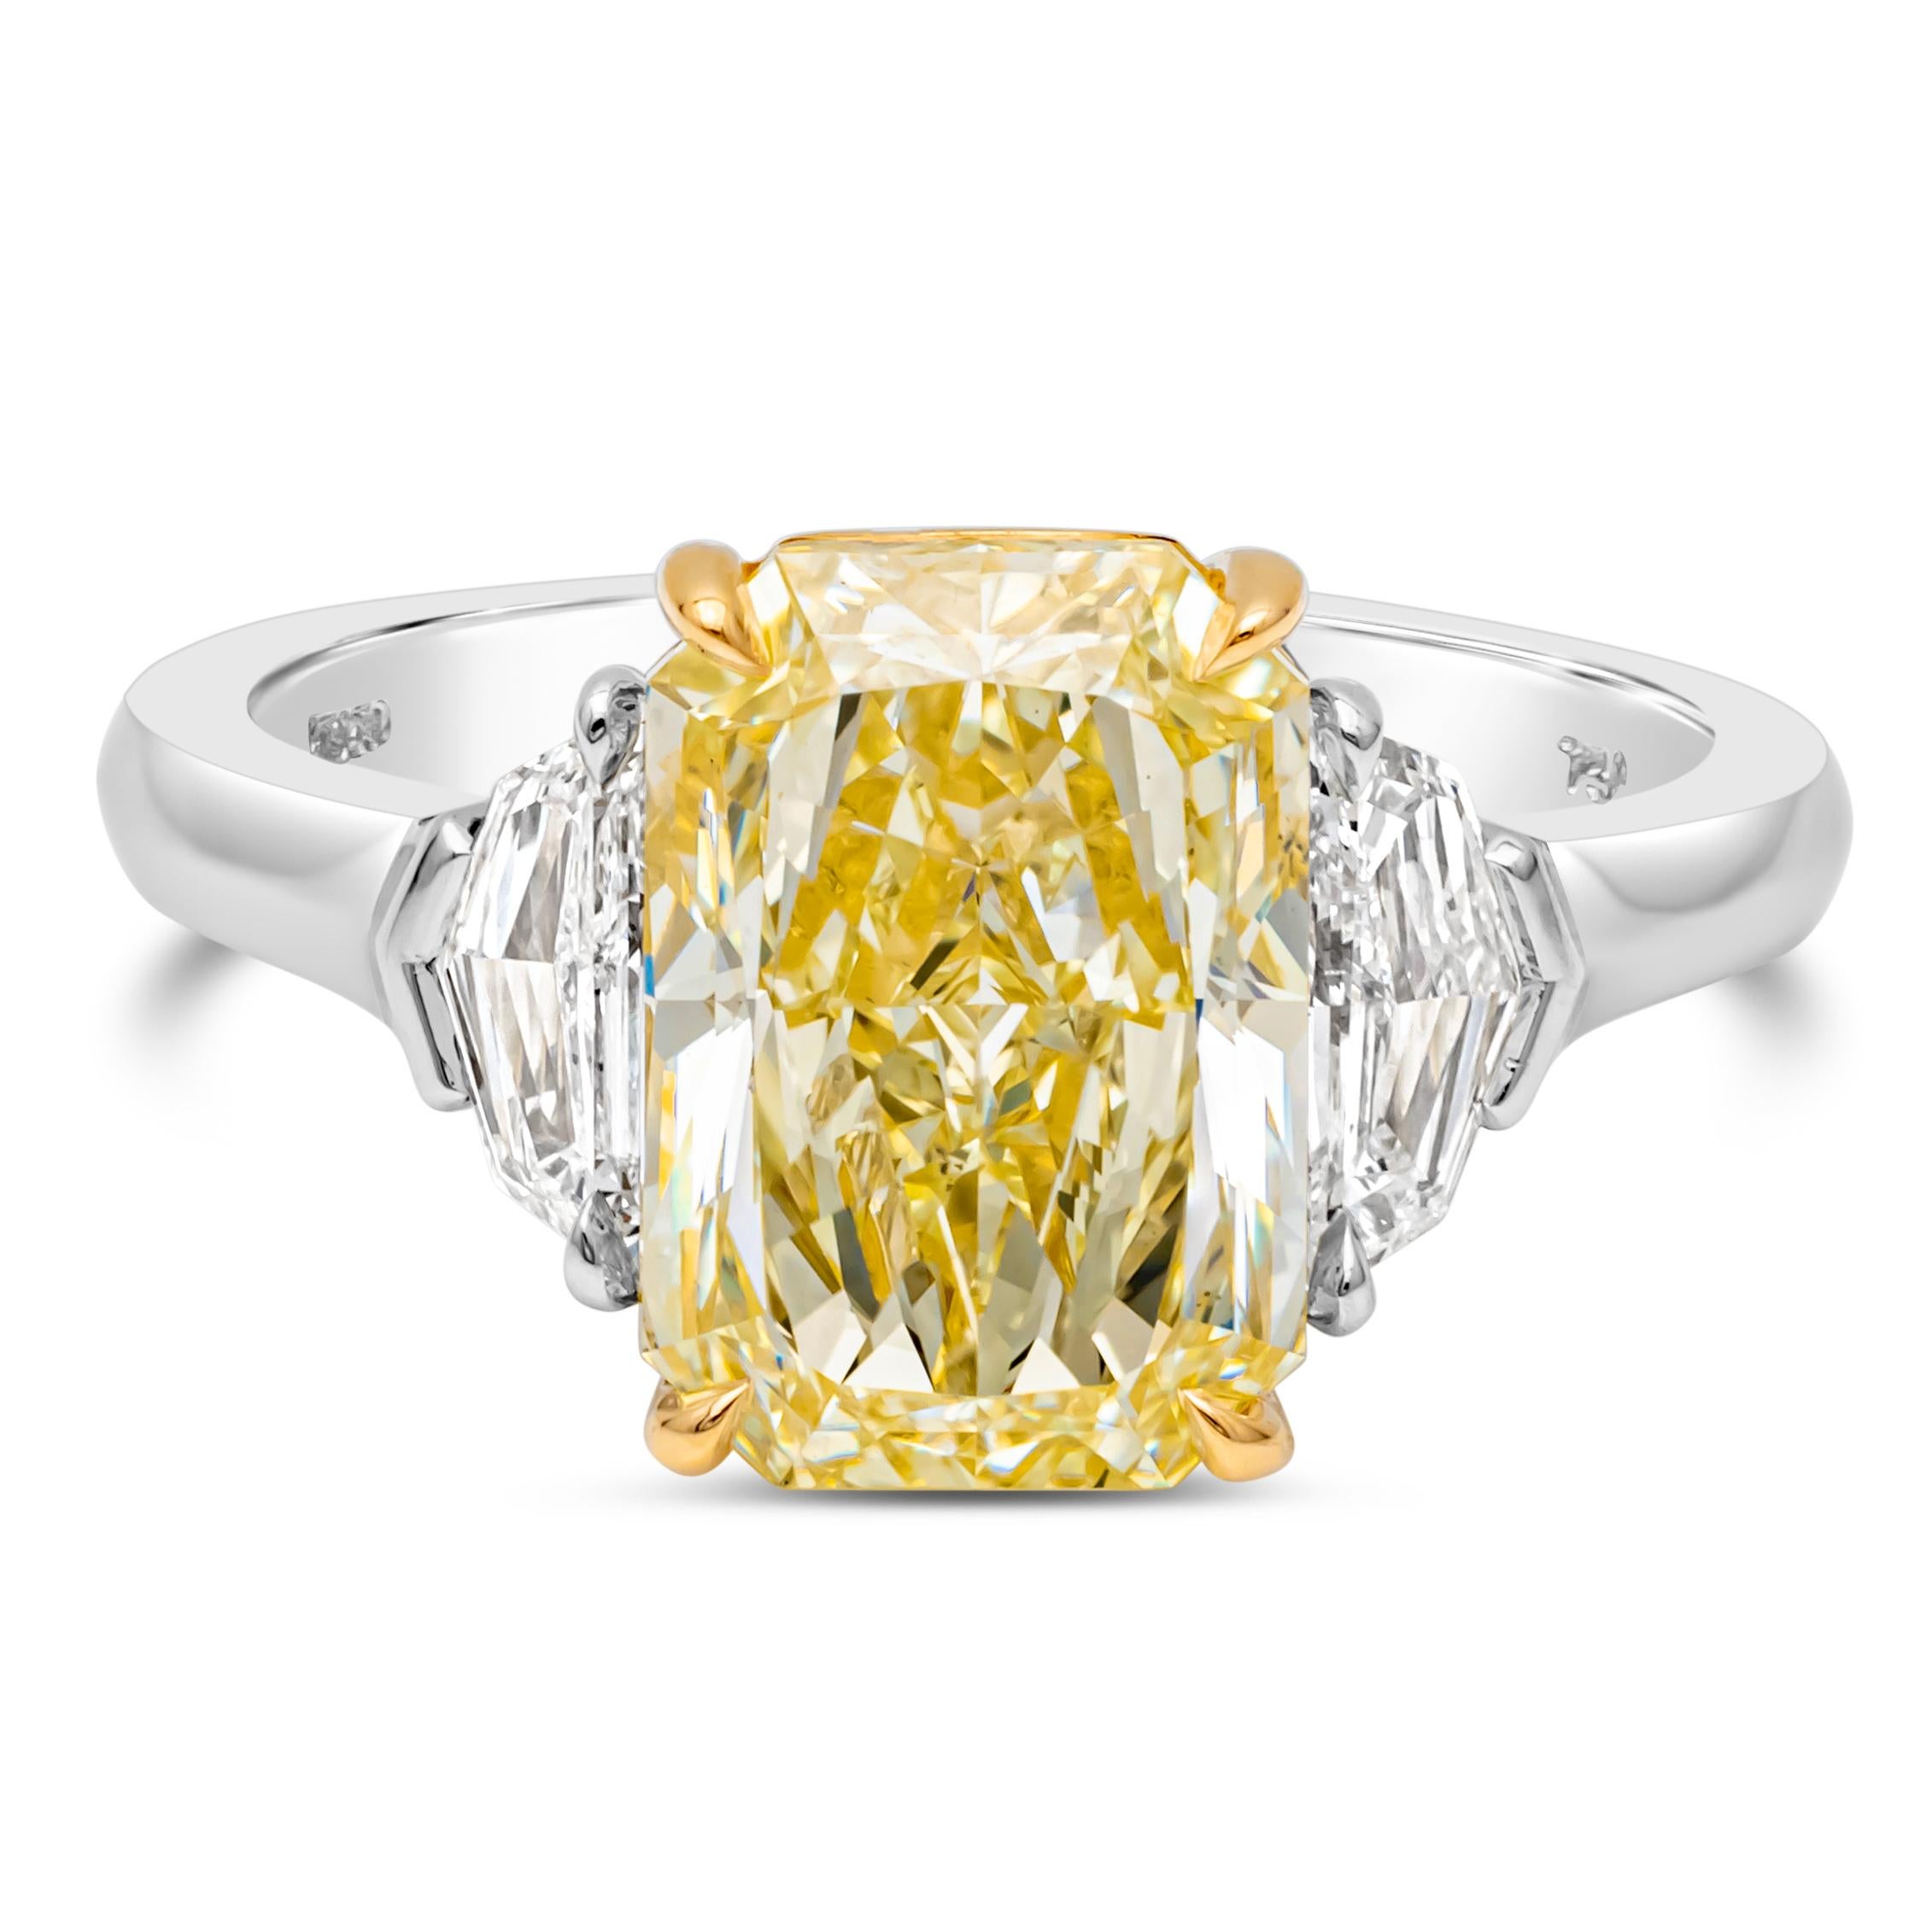 Diese wunderschöne drei Stein Verlobungsring verfügt über eine 4,02 Karat strahlenden Schliff fancy gelben Diamanten von GIA zertifiziert  als Y-Z Farbe, SI1 in Klarheit und in einer klassischen vierzackigen Korbfassung gefasst. Flankiert von